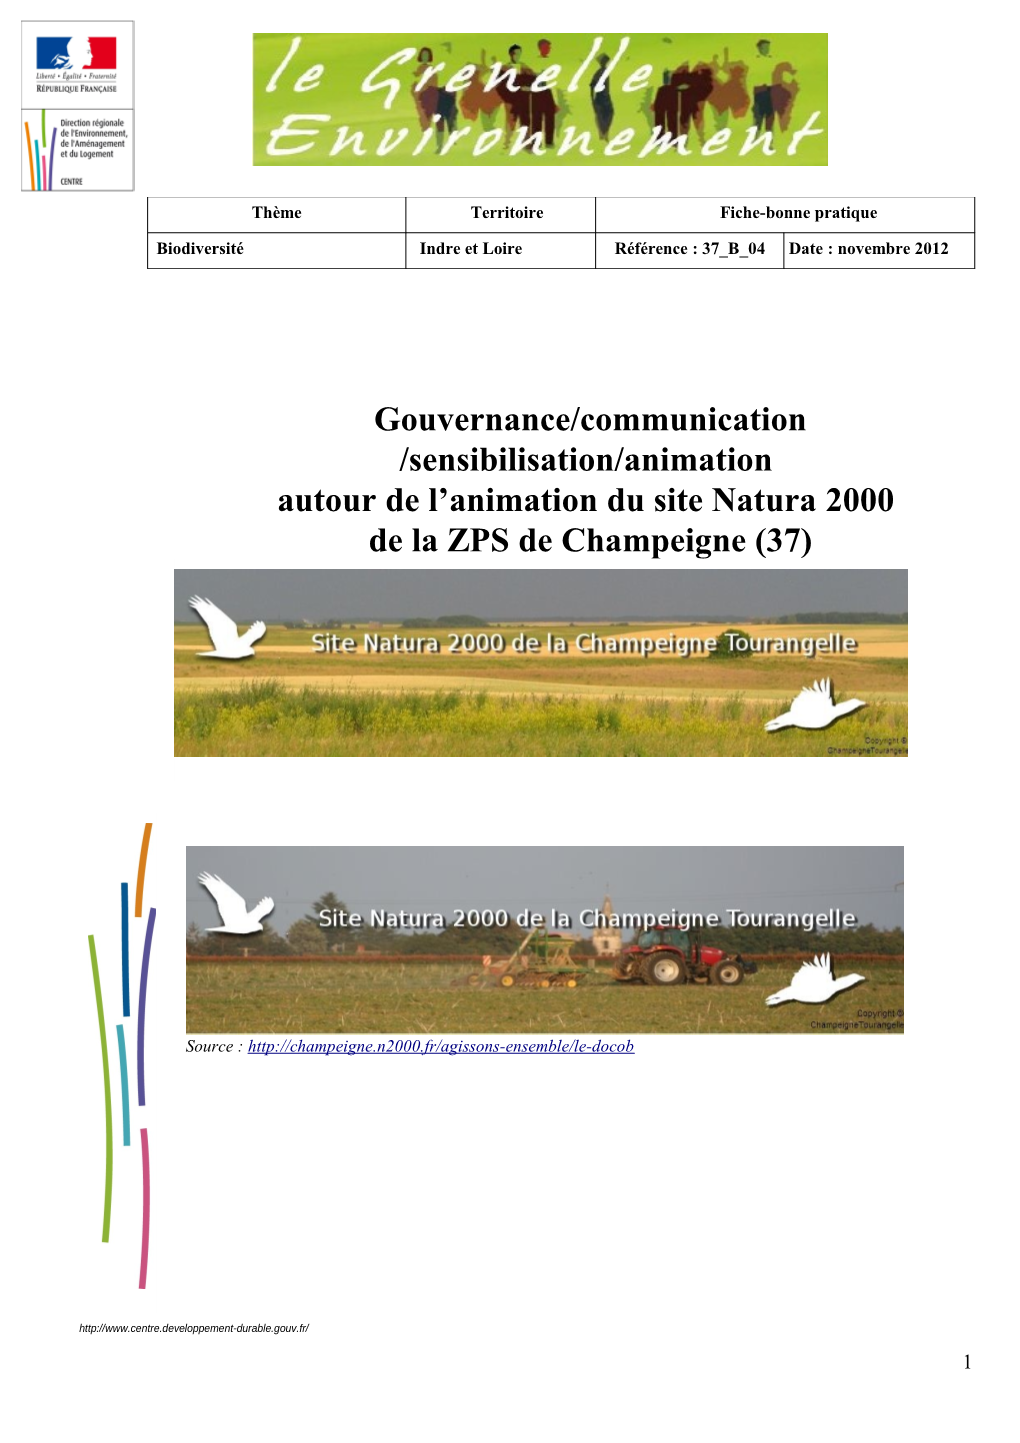 Gouvernance/Communication /Sensibilisation/Animation Autour De L’Animation Du Site Natura 2000 De La ZPS De Champeigne (37)